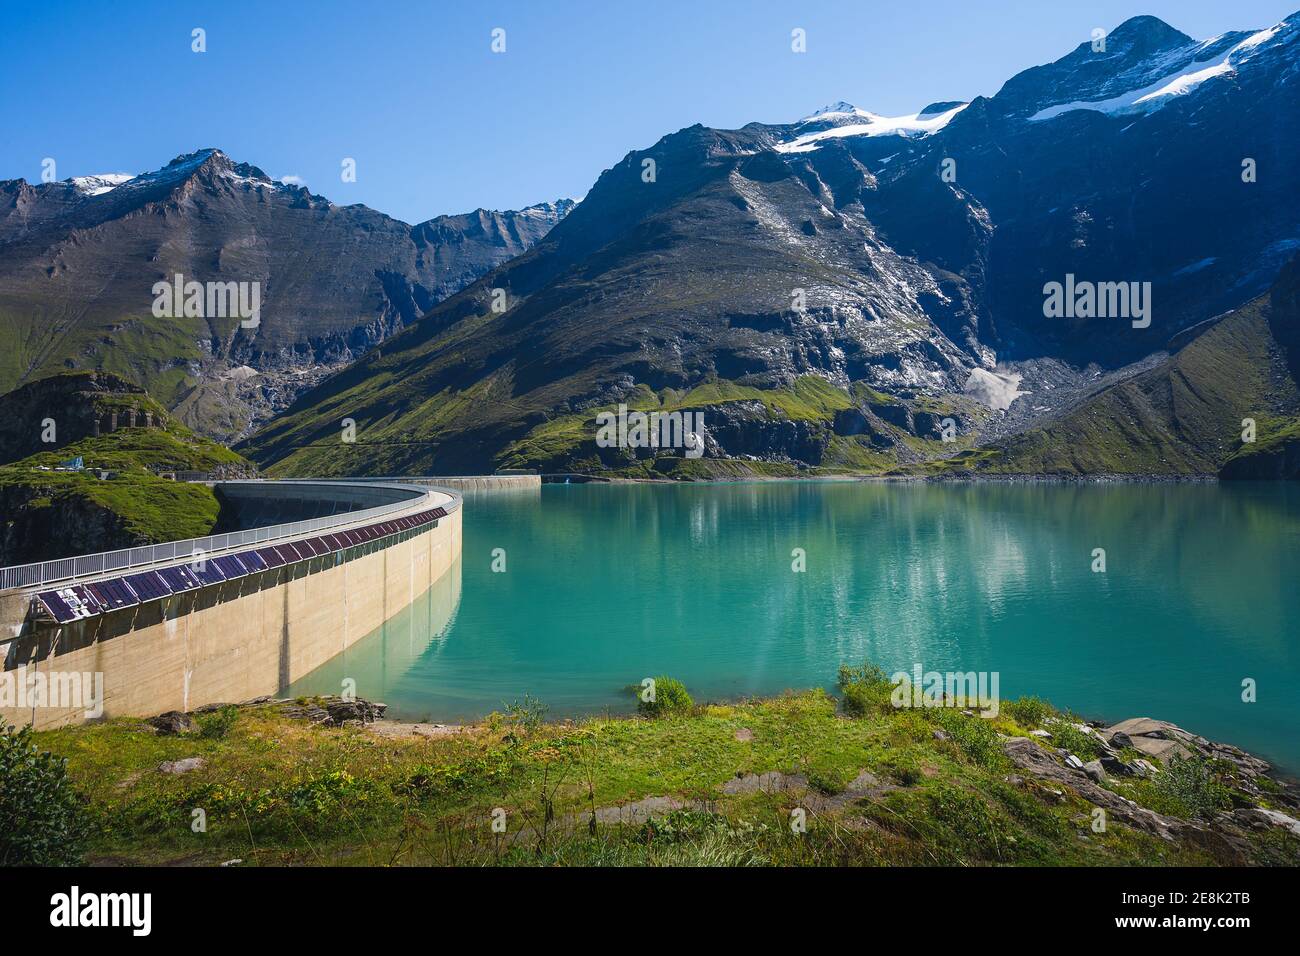 Wunderschöne Aussicht auf Damm Am Mooserboden See in Österreich Stockfoto